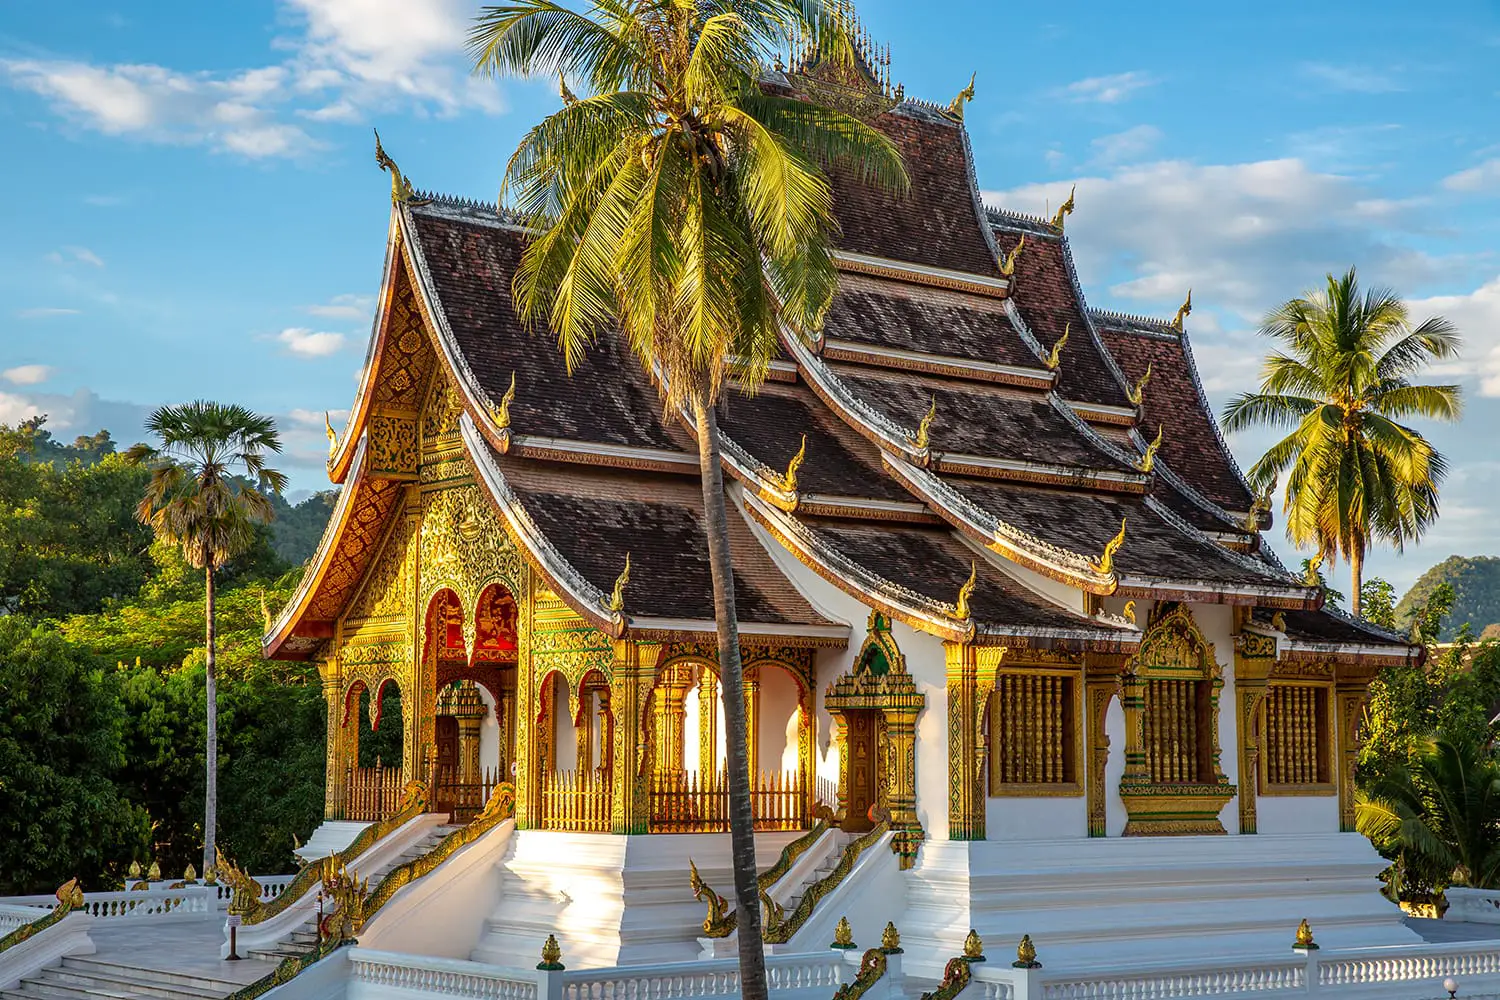 The Haw Pha Bang Temple or Royal Palace of Luang Prabang, Laos